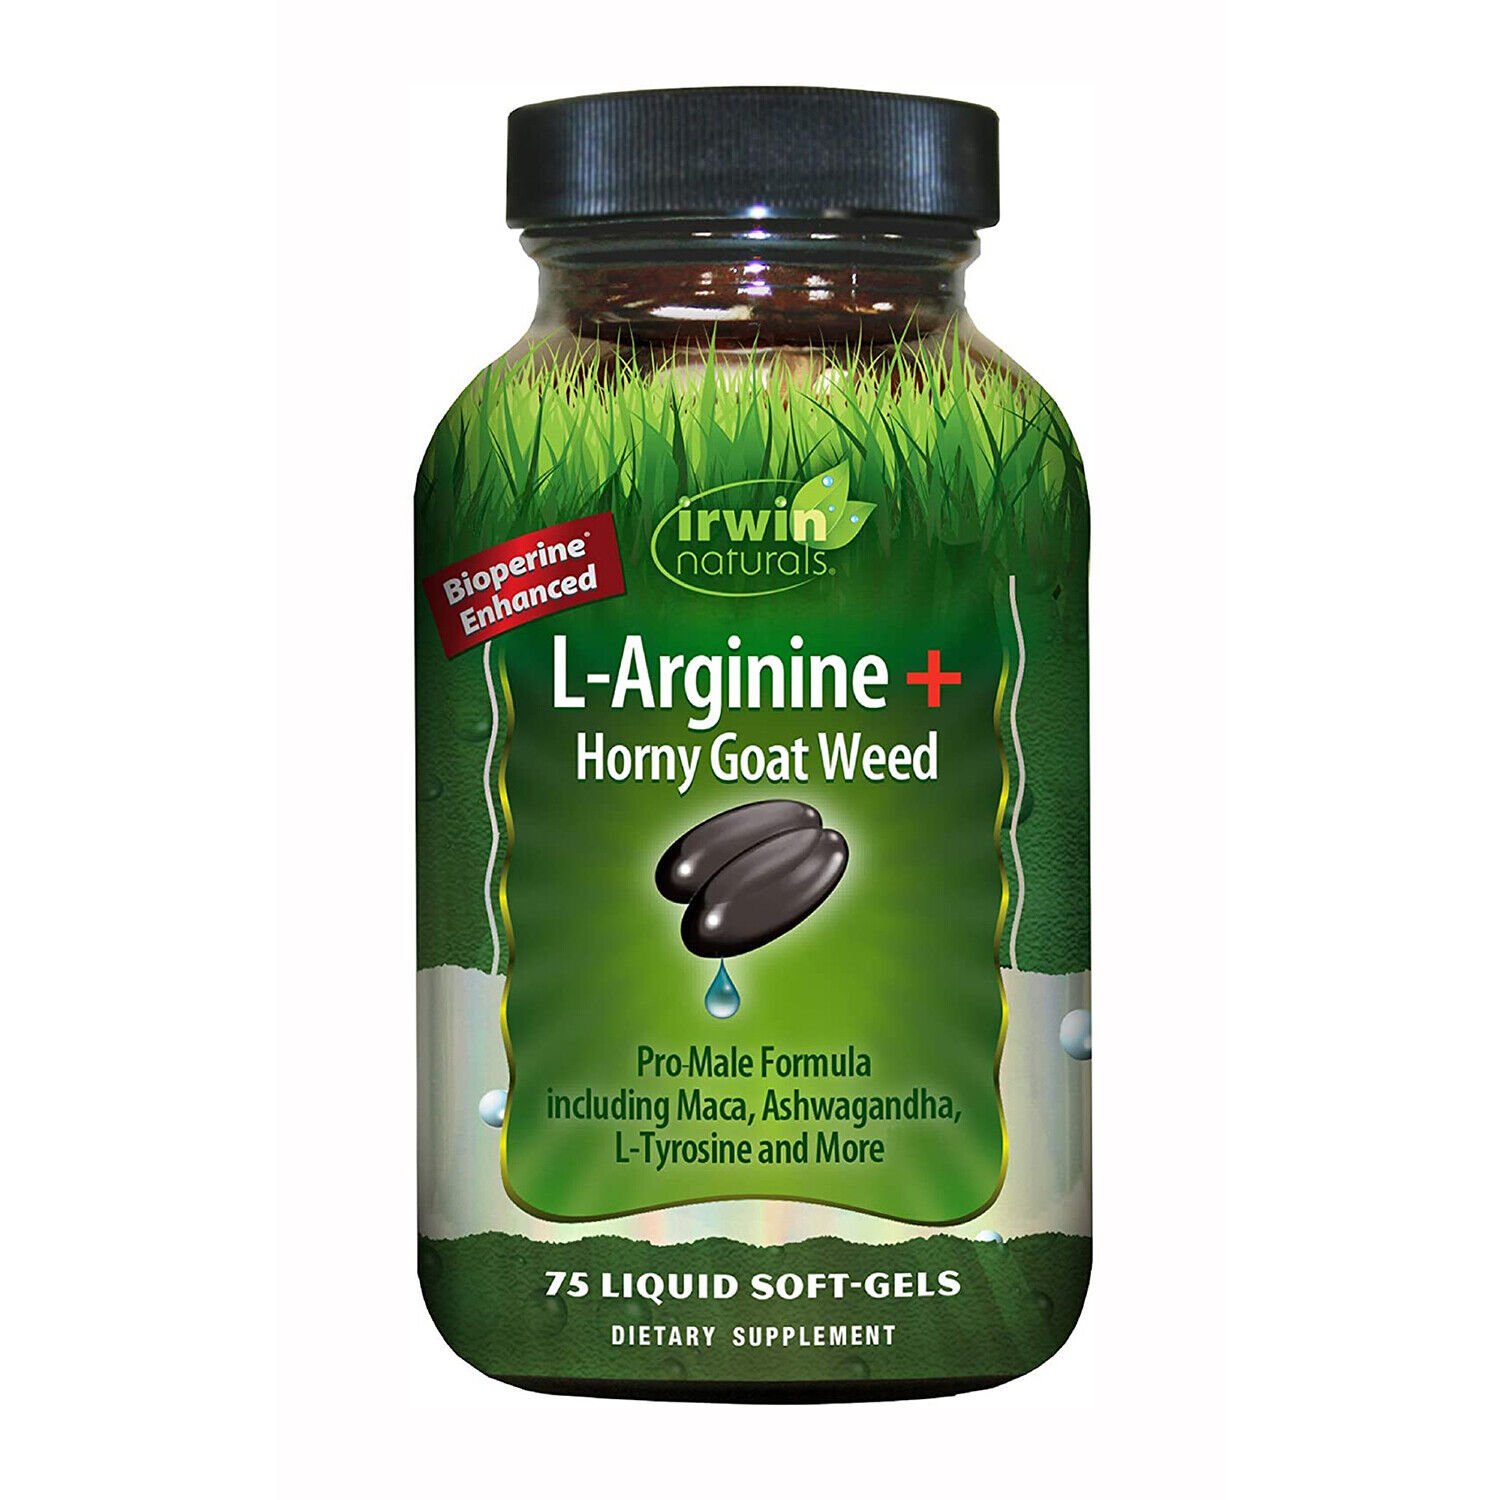 Irwin Naturals L-Arginine + Horny Goat Weed, 75 Liquid Softgels - $27.29